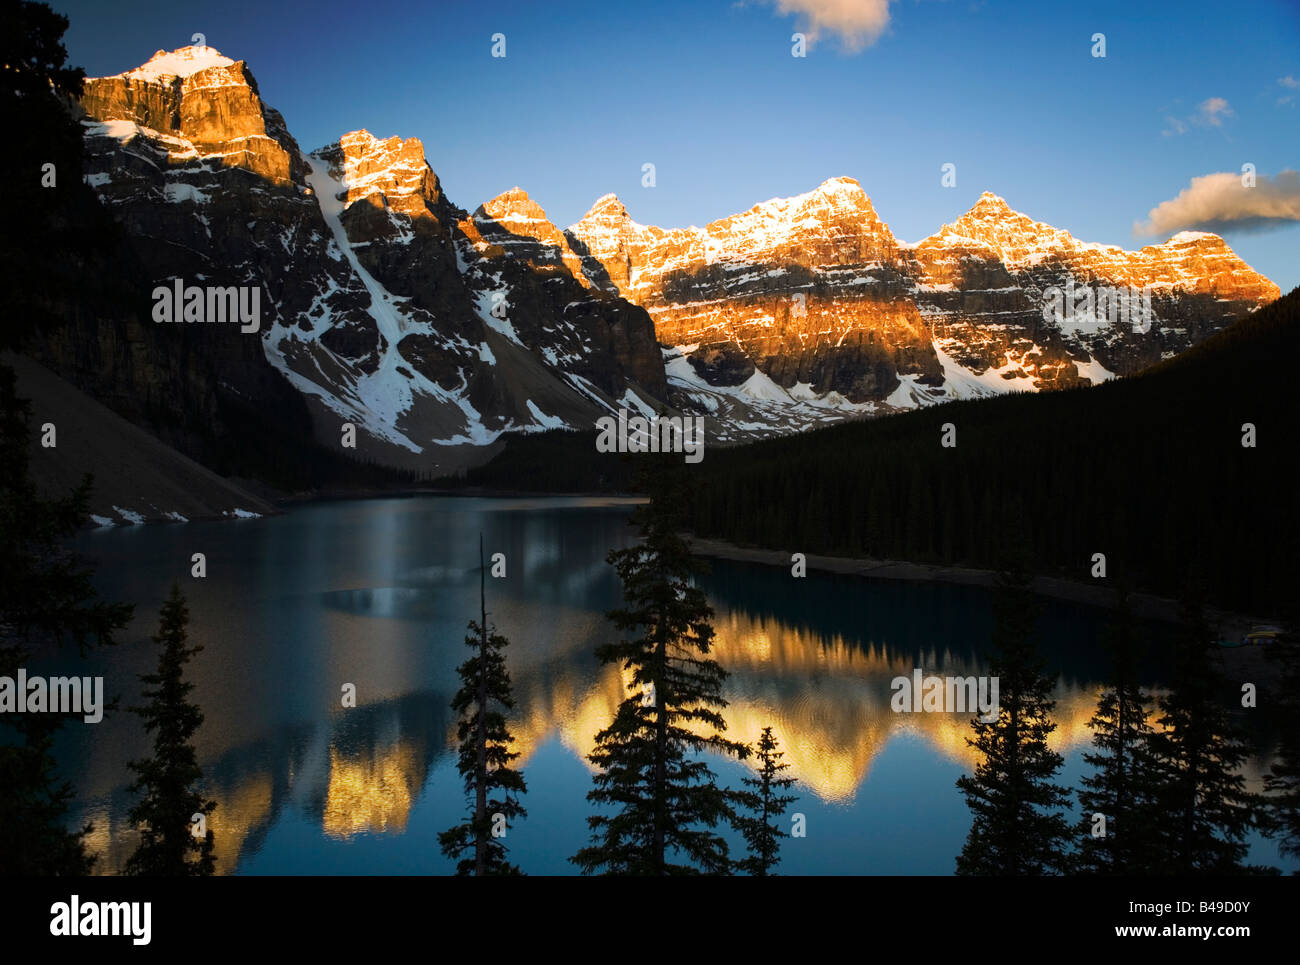 El lago Moraine y el Valle de los Diez Picos en el Parque Nacional Banff, Alberta, Canadá. Foto de stock